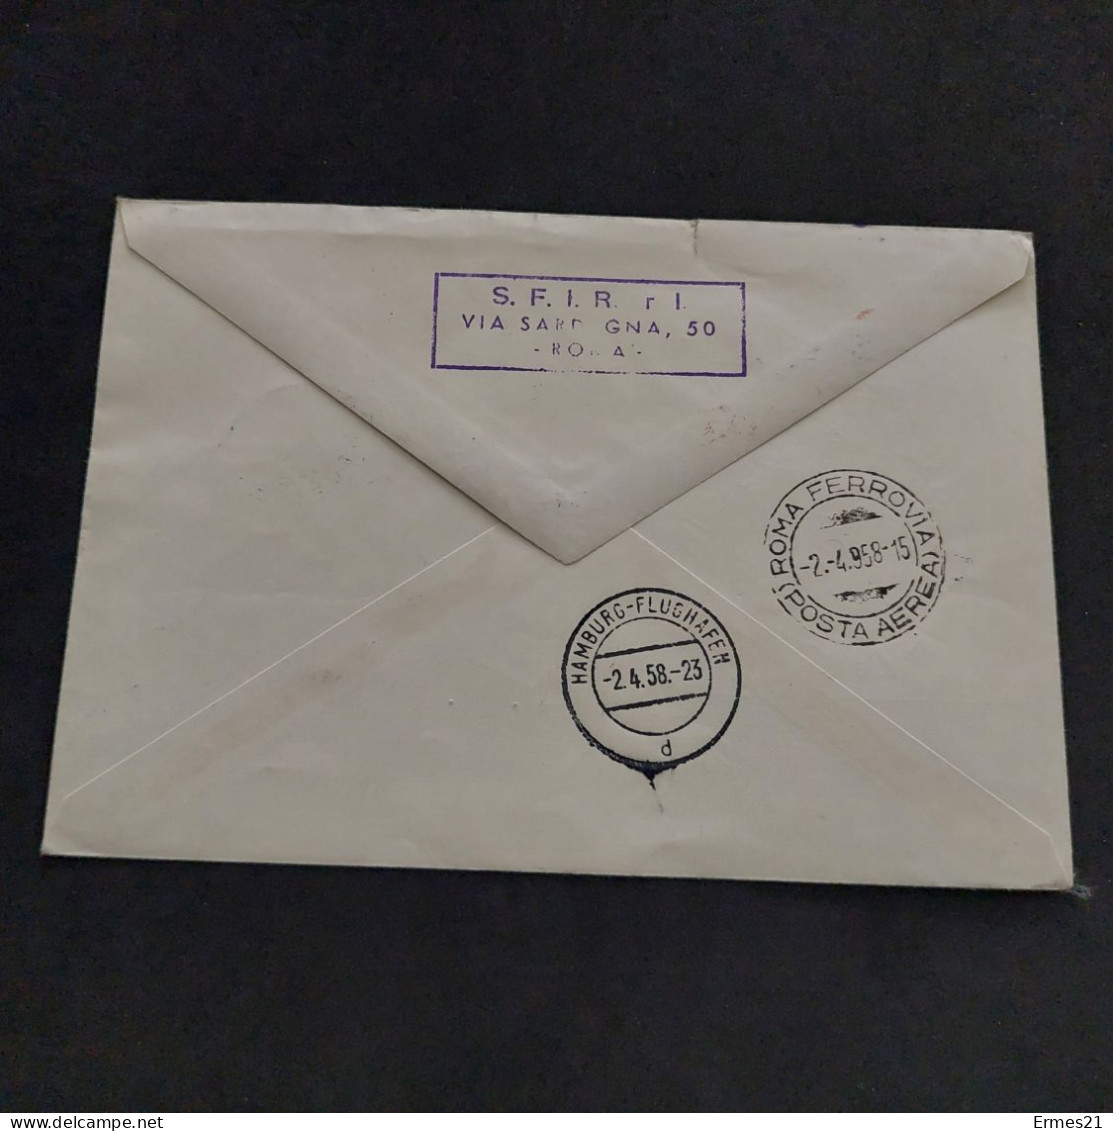 Cartolina Poste Vaticane 1958. Deutsche Lufthansa. Volo Inaugurale Roma-Francoforte. Viaggiata. - Abarten